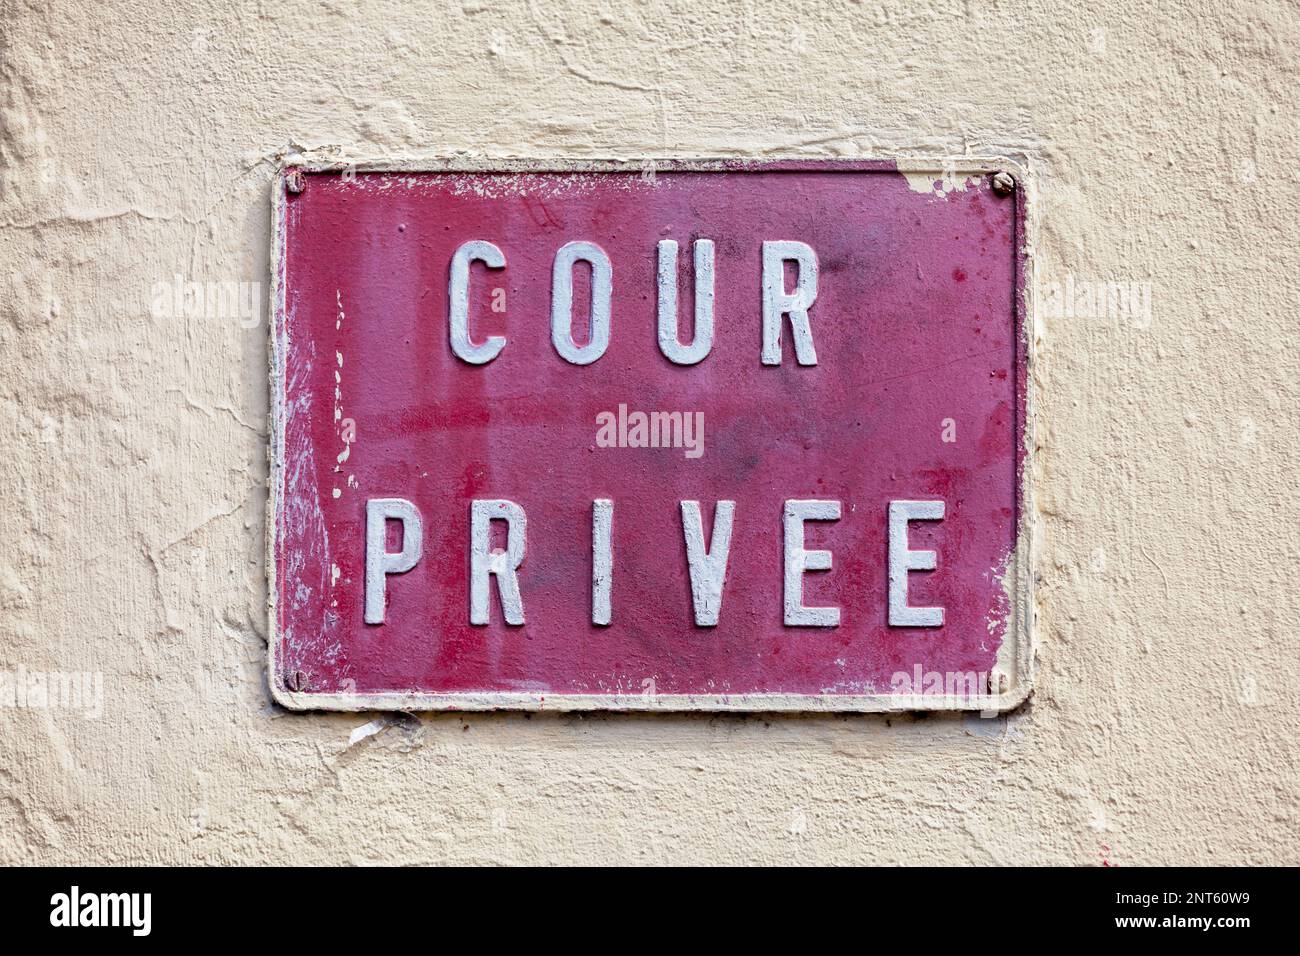 Piastra metallica verniciata in rosso a avvitata su una parete verniciata in beige. Il piatto stato in francese "Cour privée", che significa in inglese "cortile privato". Foto Stock